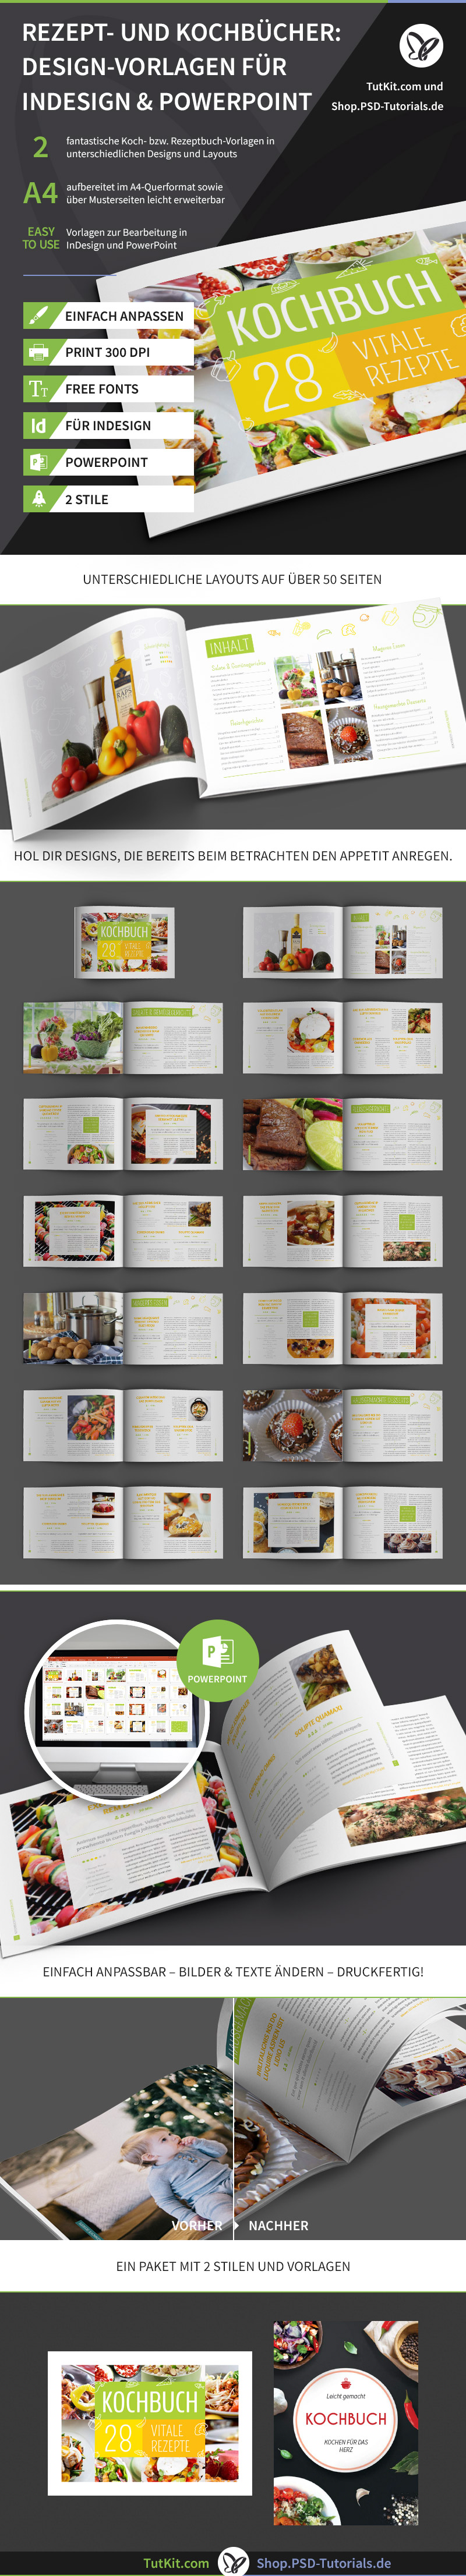 Überblick über die Design-Vorlagen für Rezept- und Kochbücher